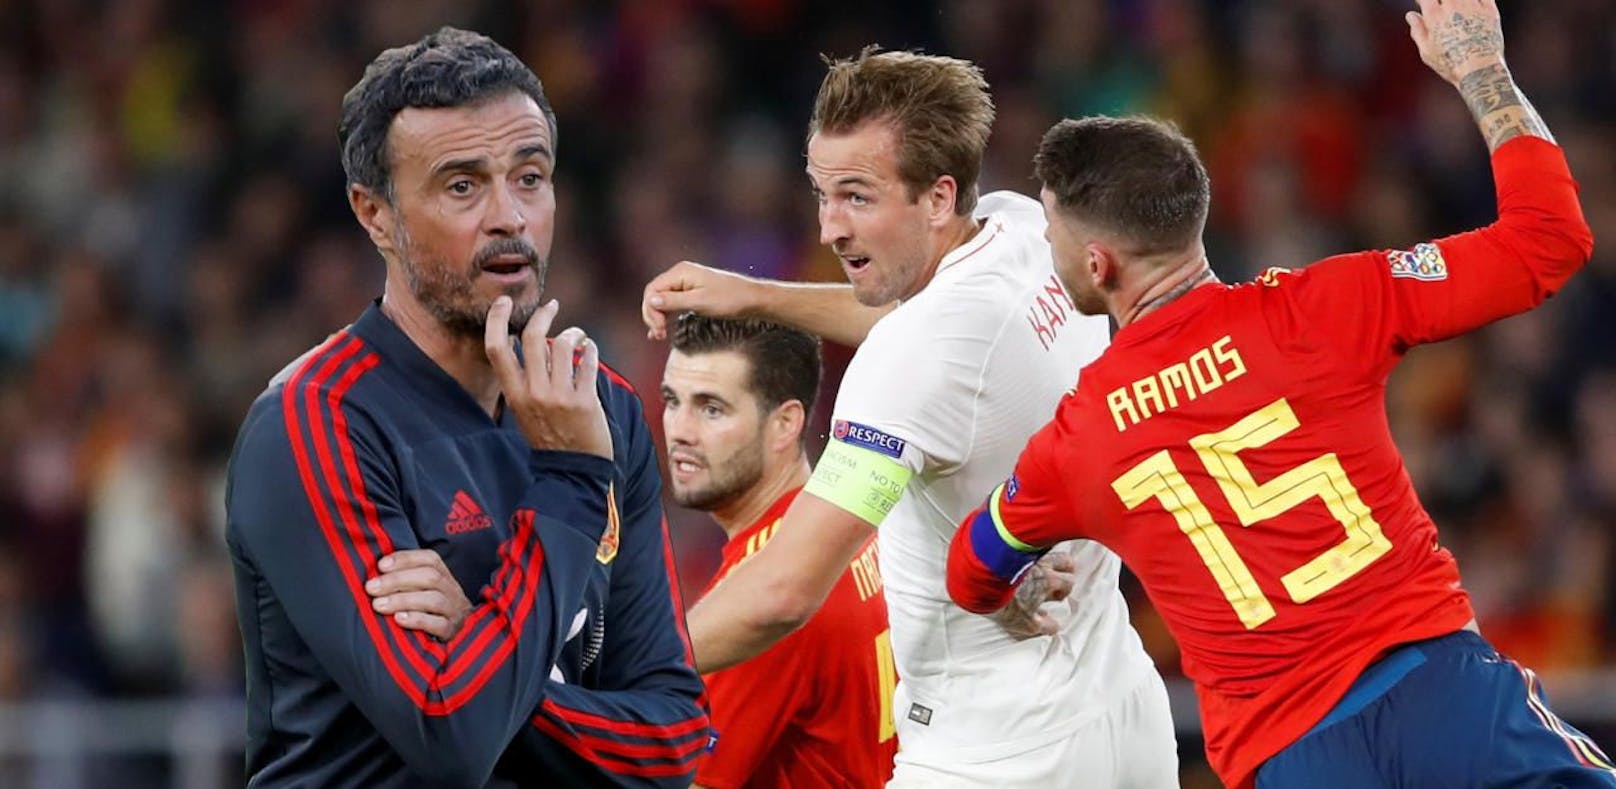 Spanien-Coach wollte Spieler nicht "umbringen"